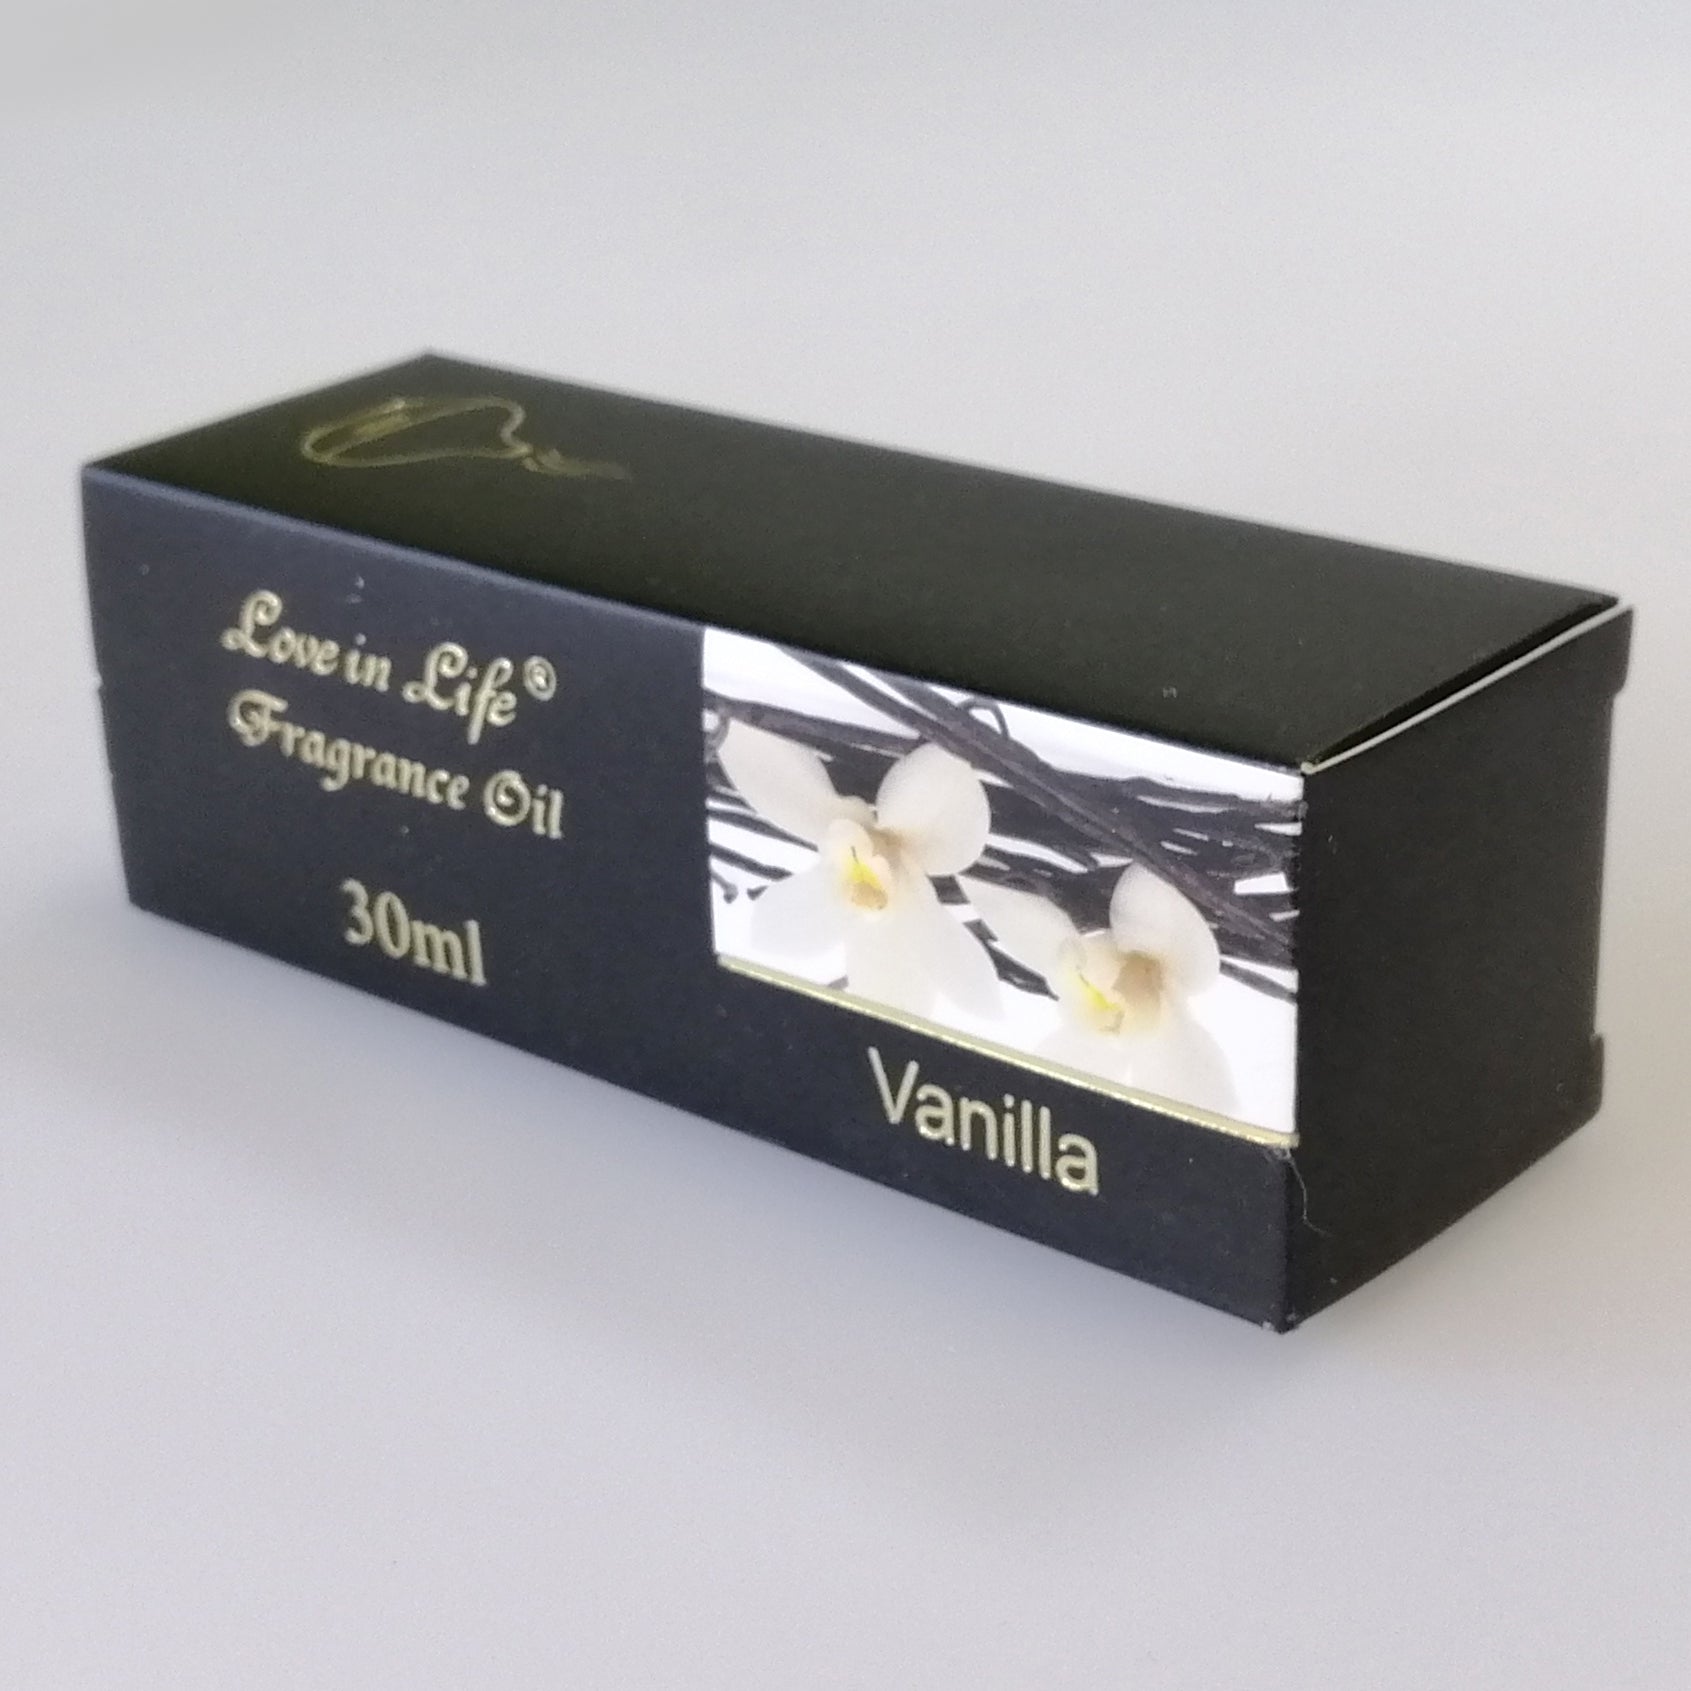 Love in Life - Fragrance Oil - Vanilla - 30ml